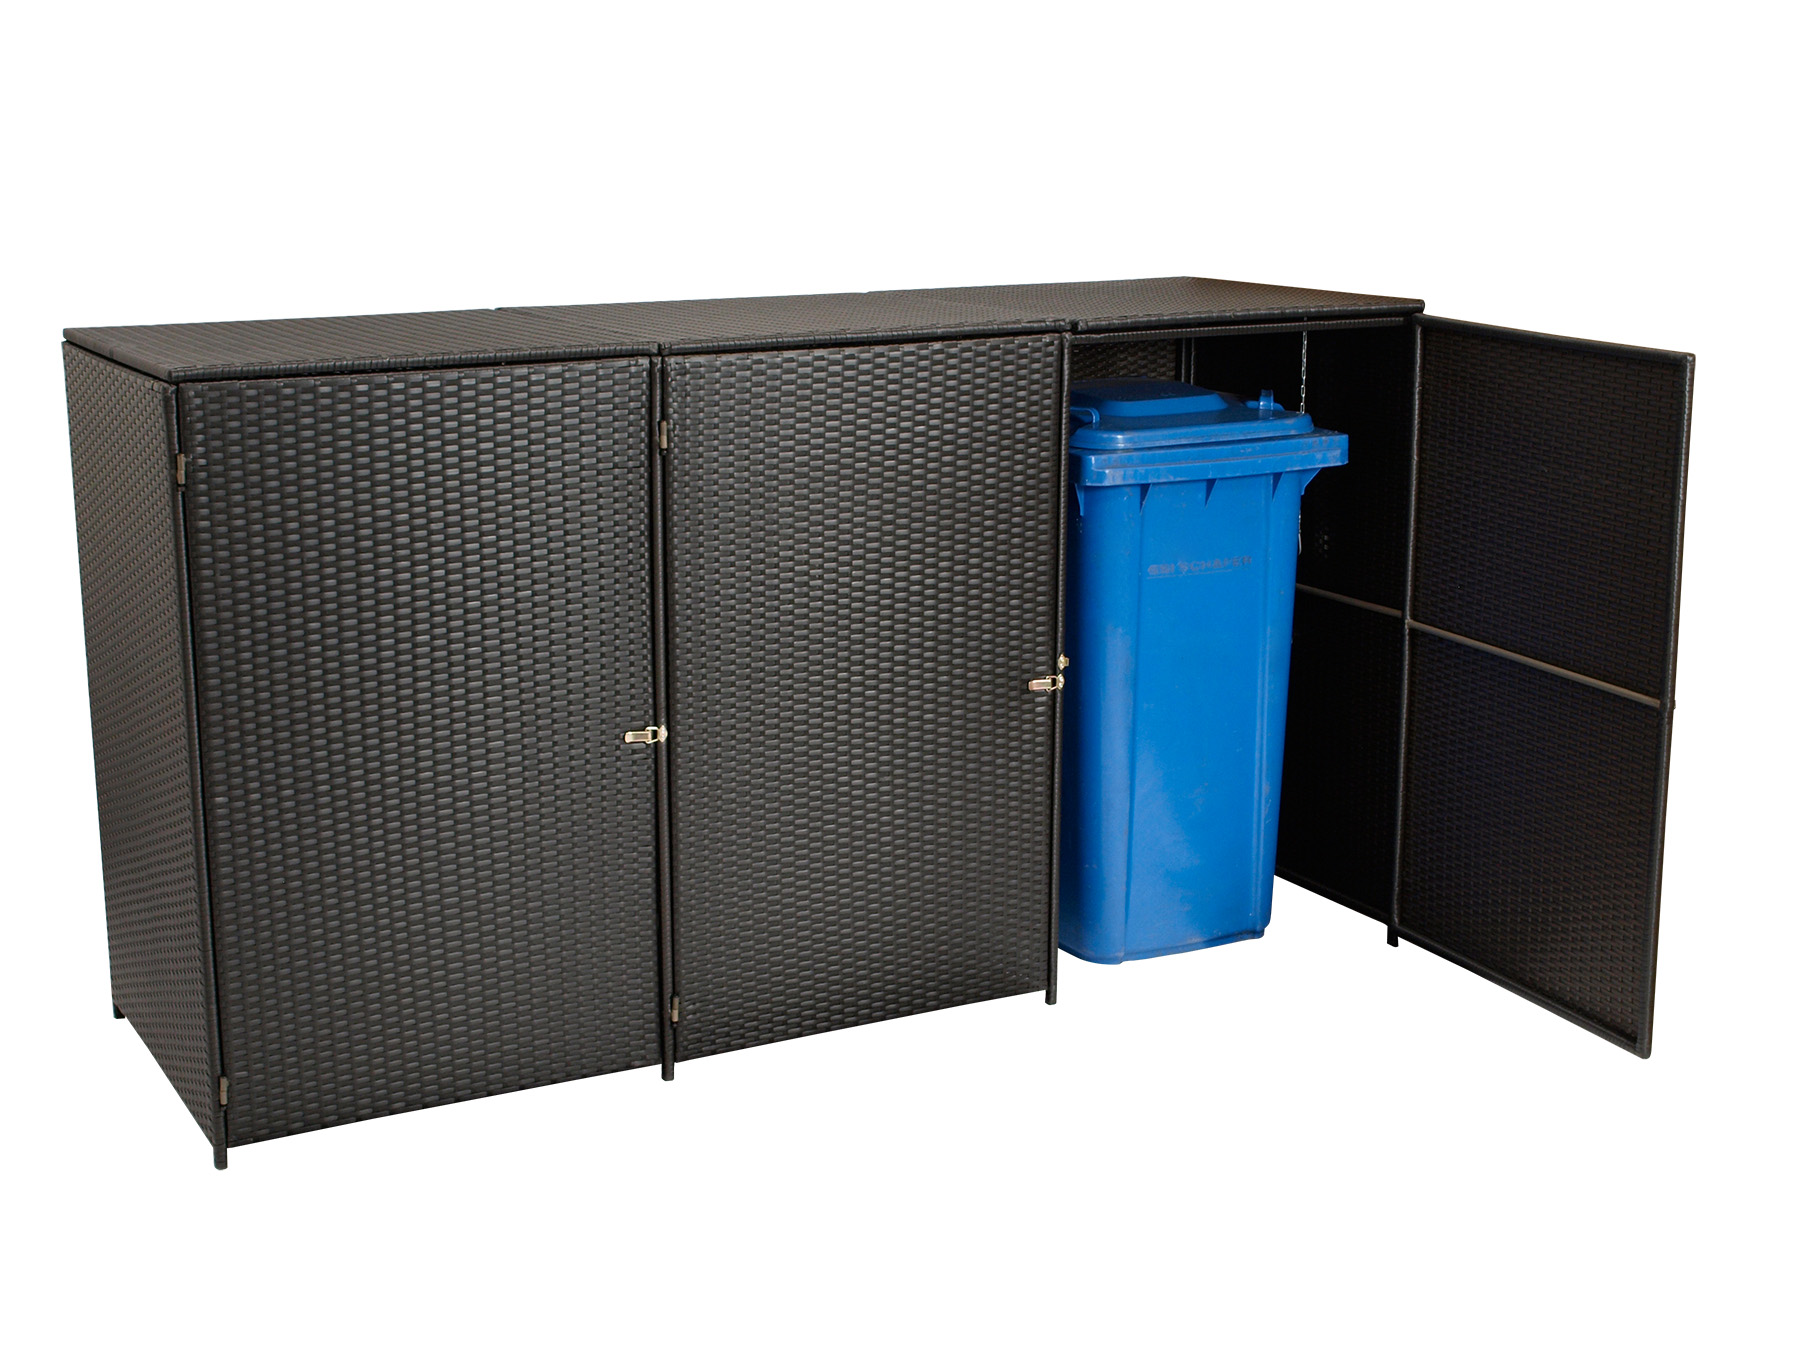 Mülltonnenbox Stahl + Polyrattan mocca, 227x78x123cm, für 3 Tonnen bis 240 Liter